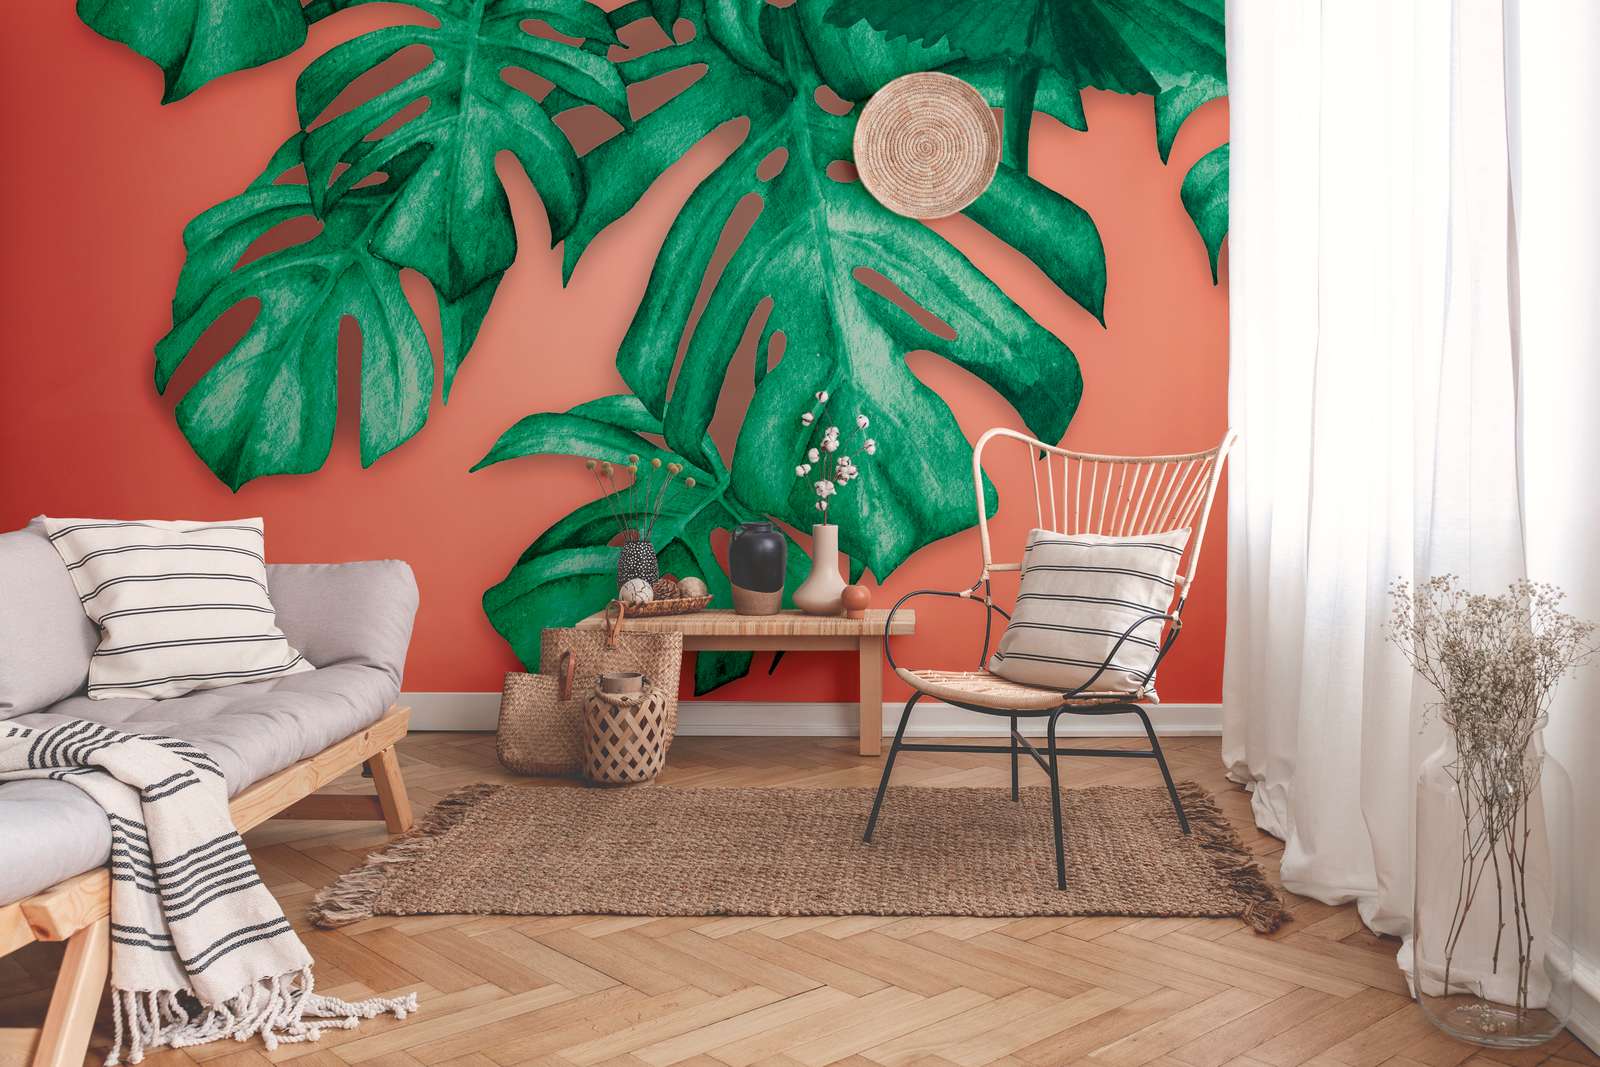             Tropical Palm Leaves Onderlaag behang - Groen, Oranje
        